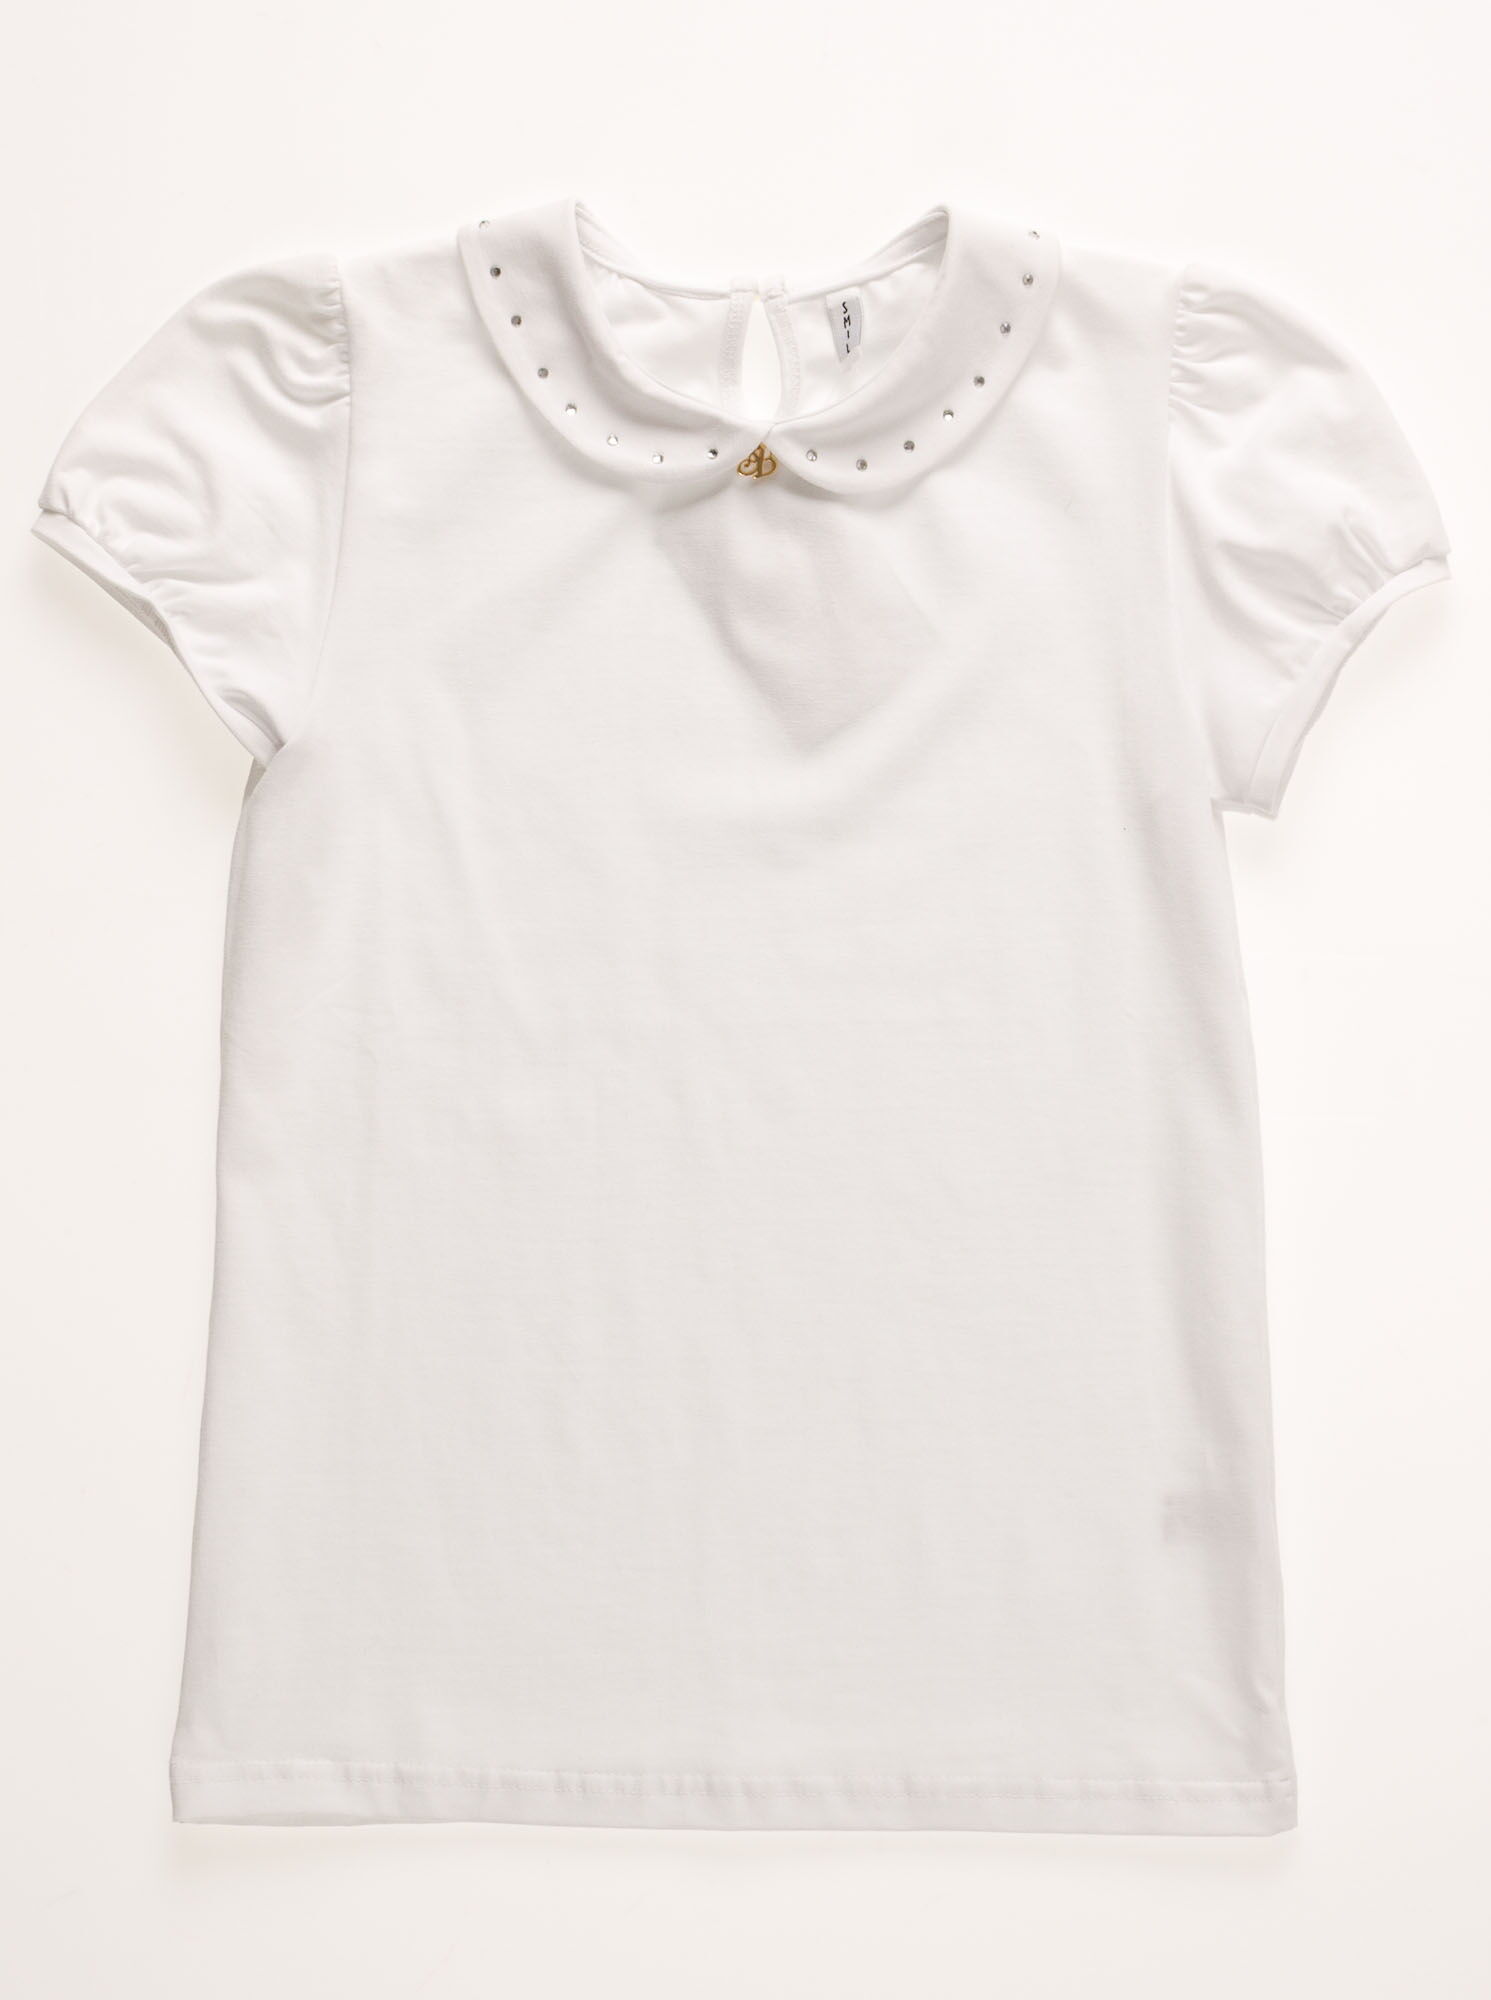 Блузка классическая трикотажная с коротким рукавом SMIL белая - фото